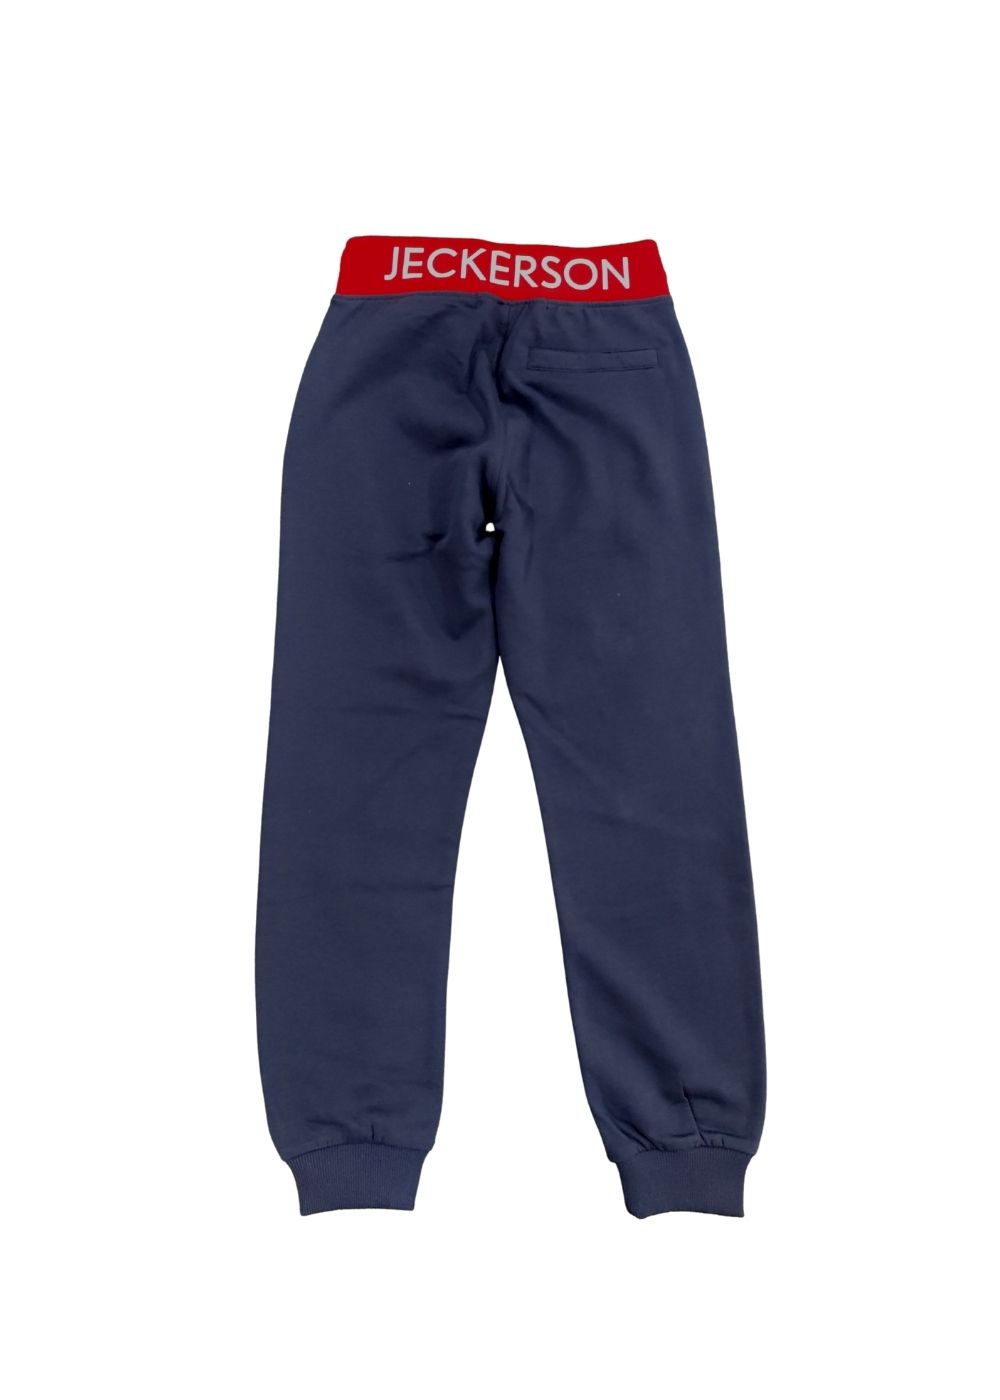 Featured image for “Jeckerson Pantalone Tuta”